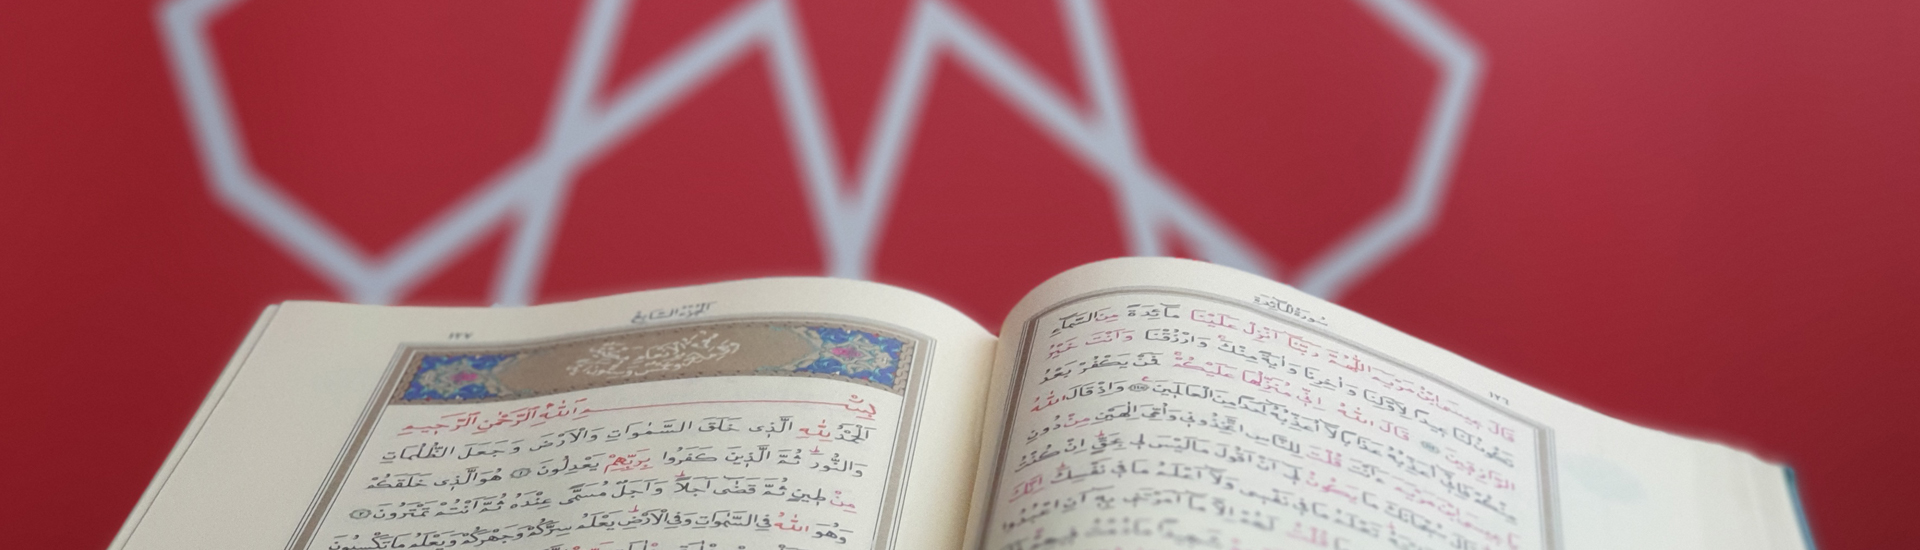 Qur’anwetenschappen